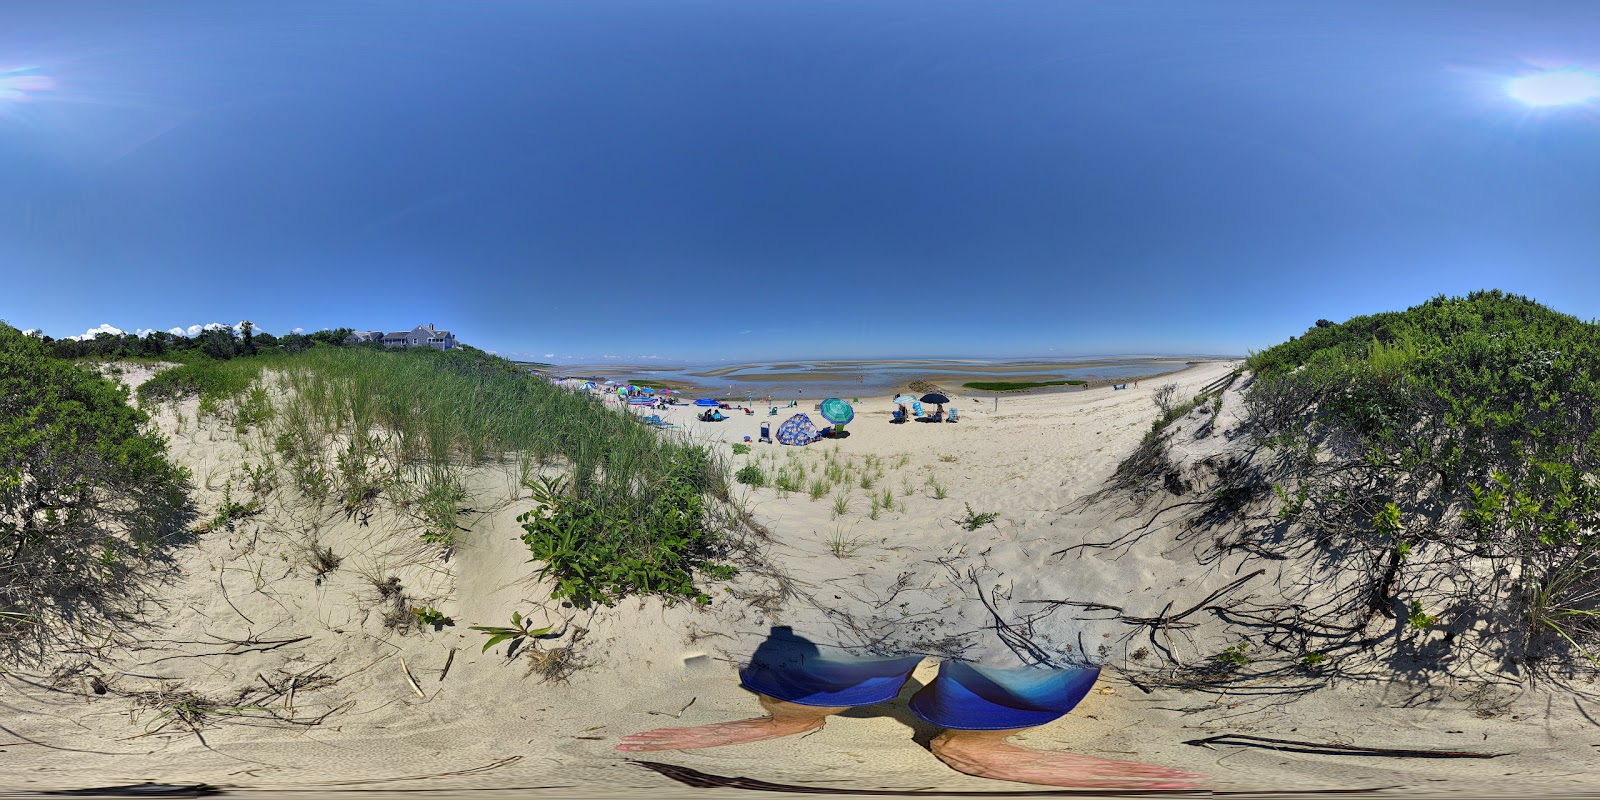 Mant's Landing beach'in fotoğrafı çok temiz temizlik seviyesi ile